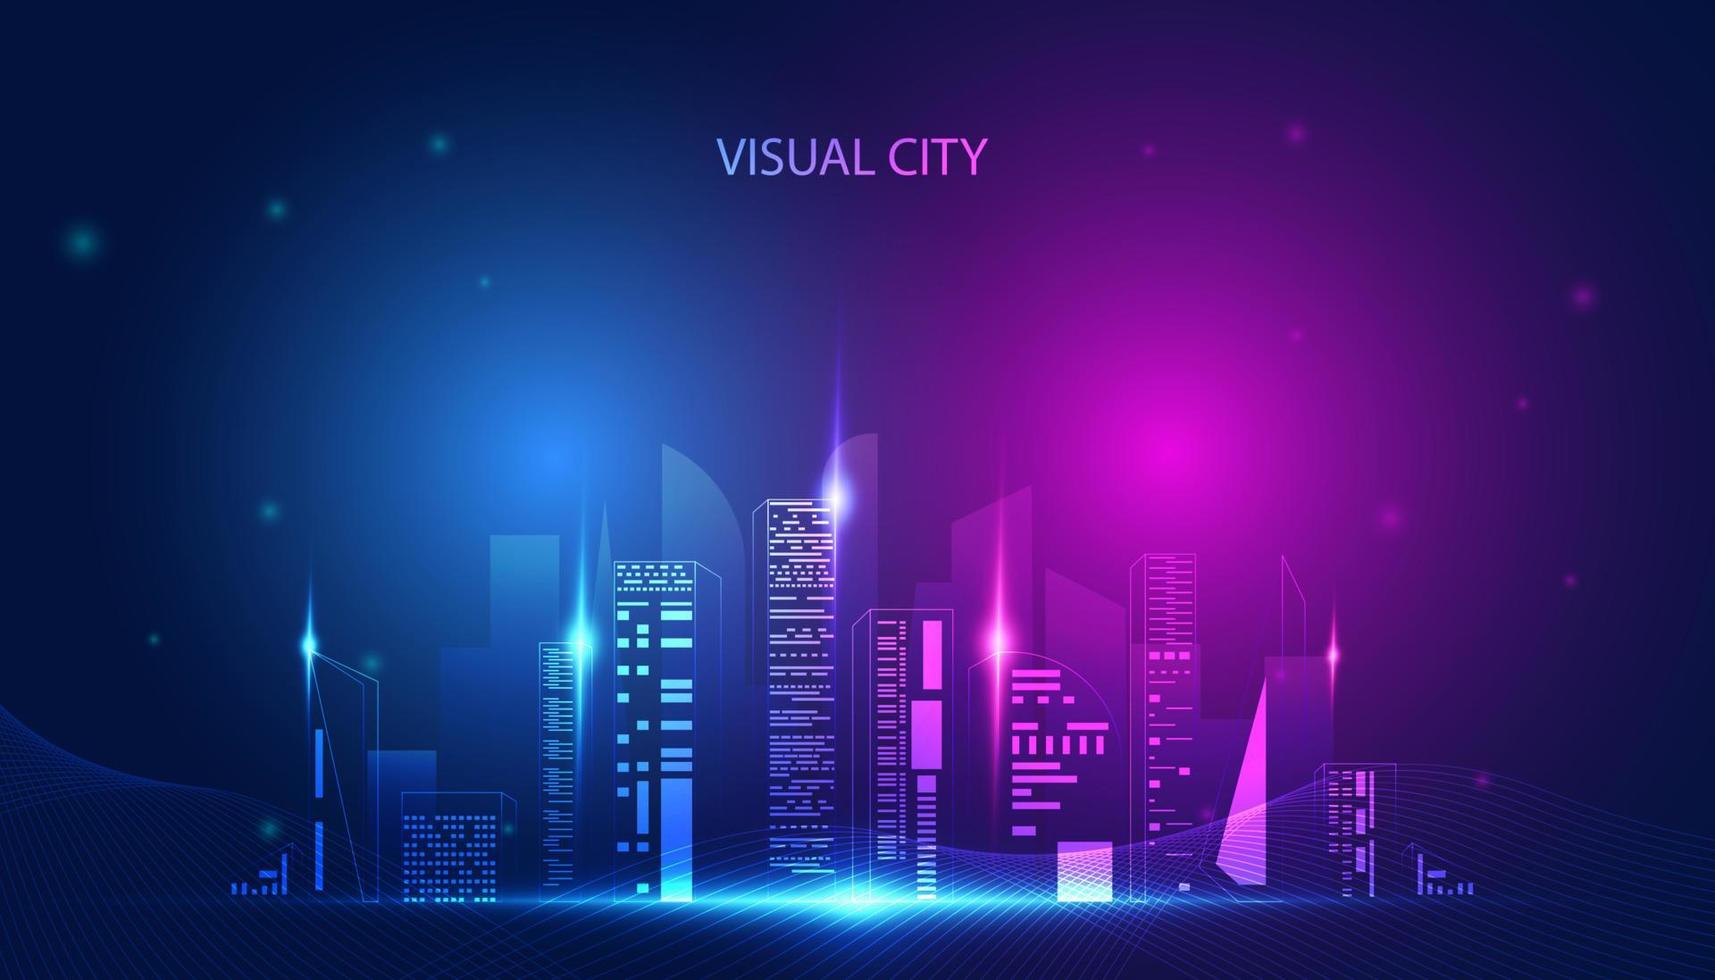 abstrakt bunt stadtkonzept visuelles stadthologramm online-stadtsimulation metaverse auf hintergrund blau rosa modern vektor